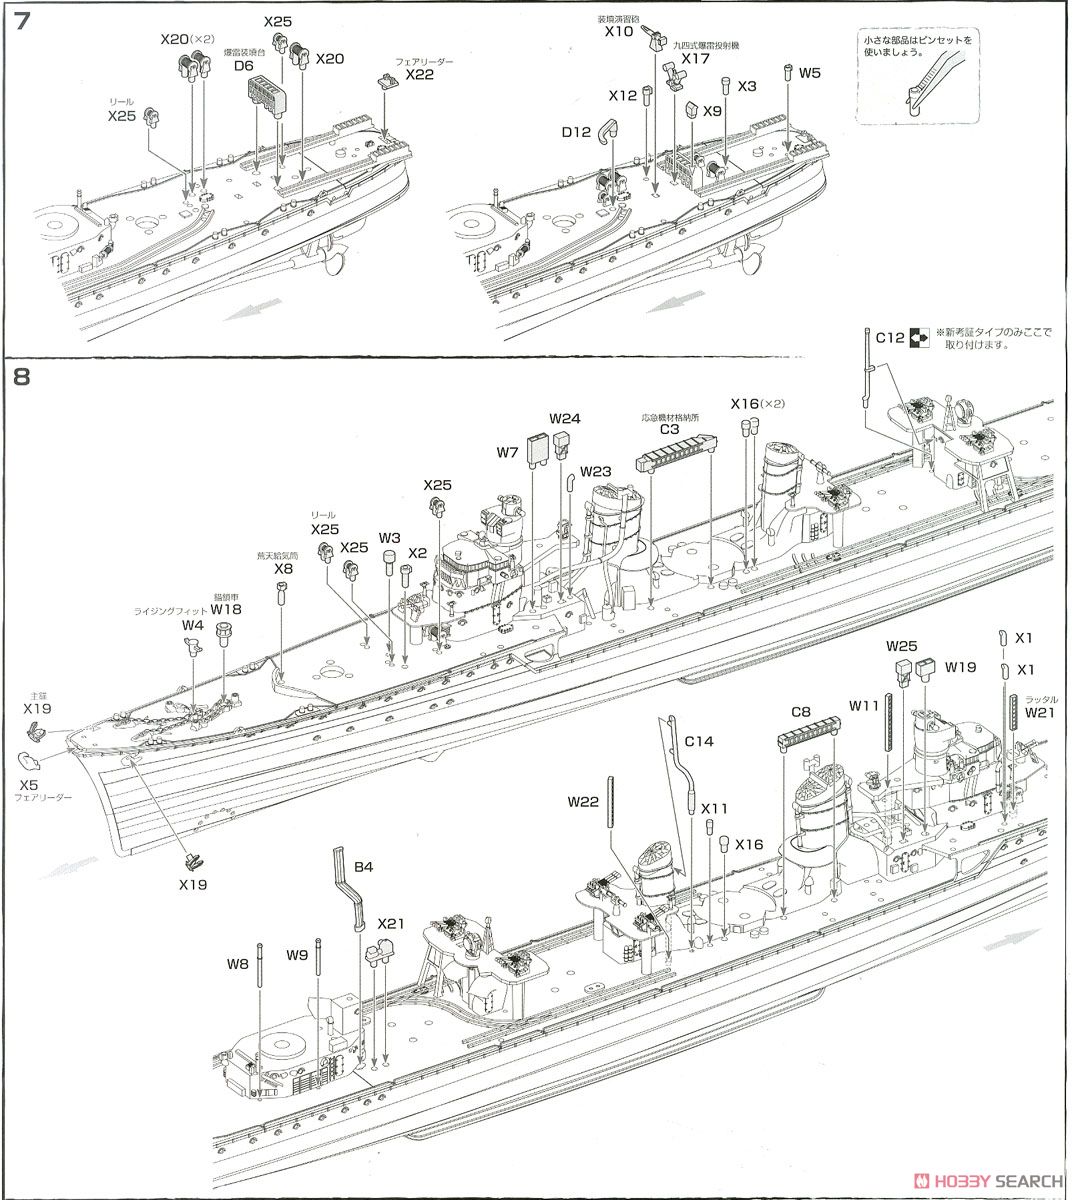 日本海軍駆逐艦 島風 最終時/昭和19年 彩色済み乗組員付き (プラモデル) 設計図3